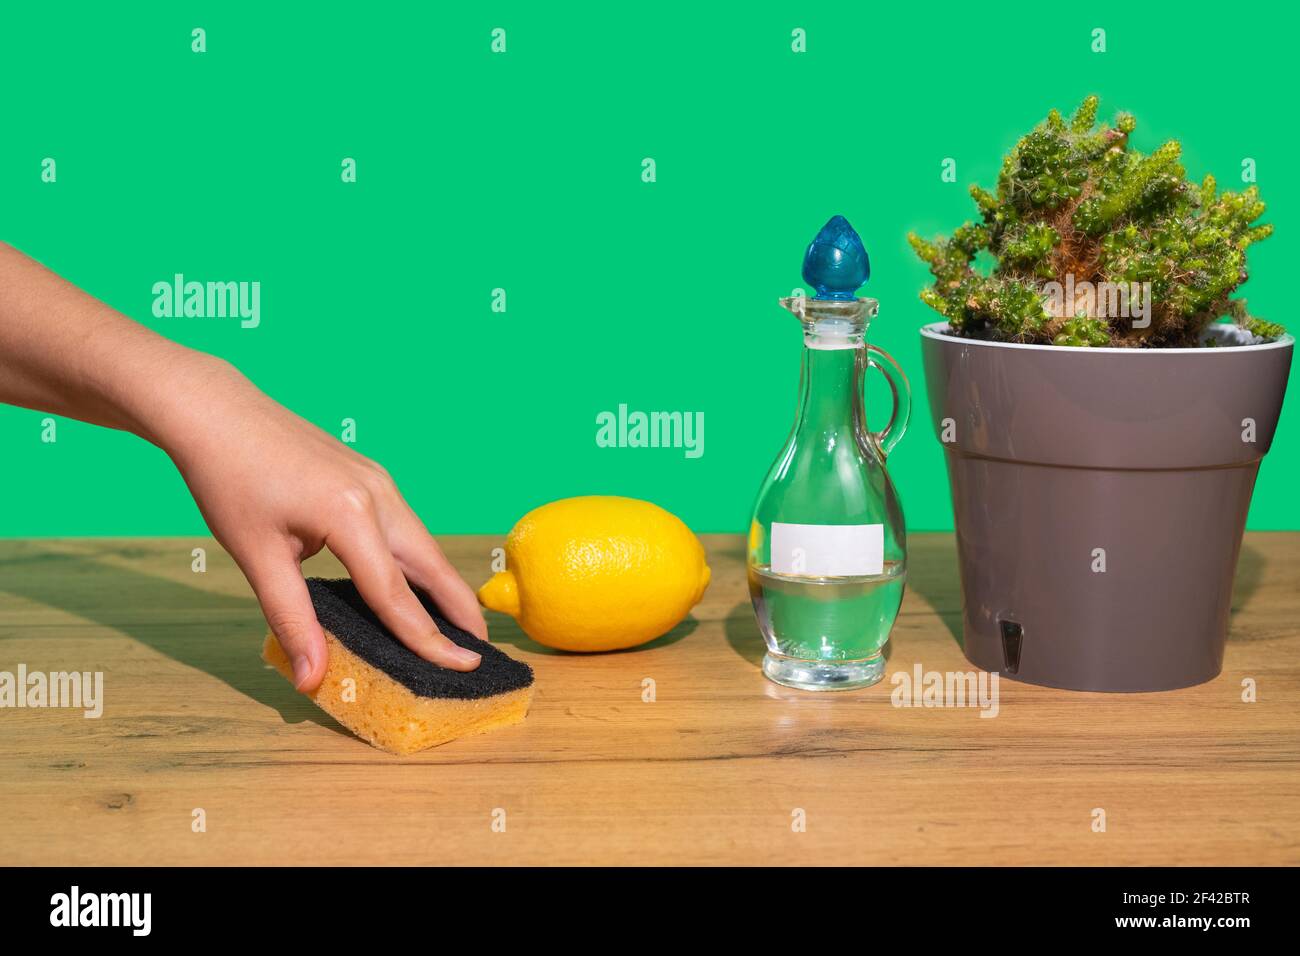 Eine Frauenhand wischt einen Holztisch mit einem Schwamm und einem natürlichen ungiftigen Mittel ab. Ökologische Hausreinigung Produkte. Essig, Zitrone. Grüner Hintergrund. Stockfoto